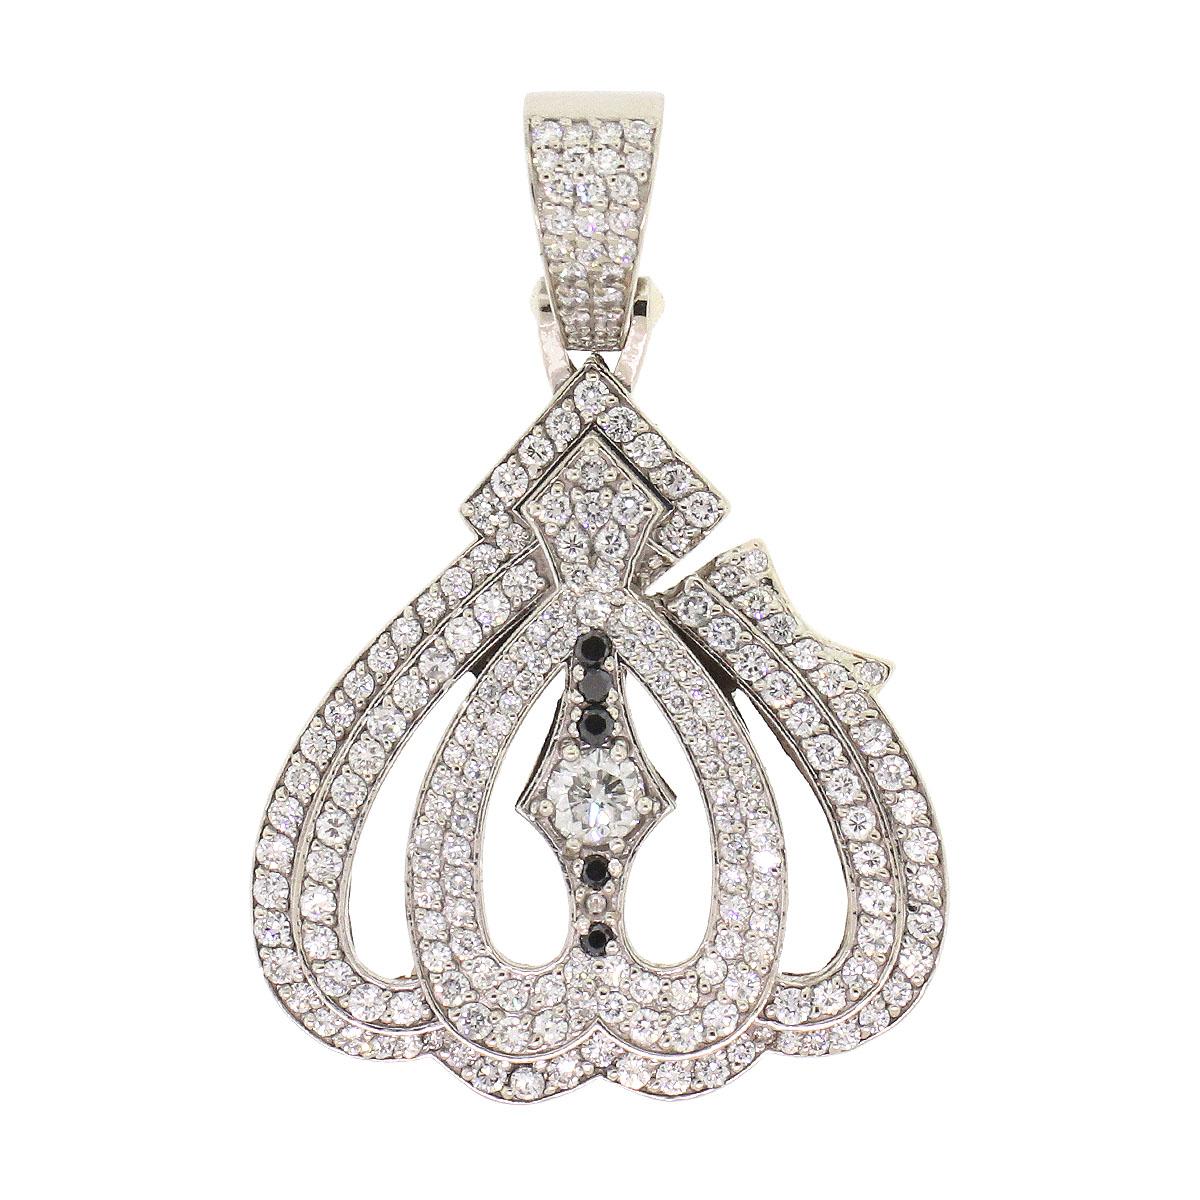 Cette magnifique pièce présente environ 5ctw de diamants ronds, méticuleusement sertis dans un luxueux pendentif en or blanc 14k. Avec son design unique et son symbole significatif, c'est l'accessoire parfait pour ajouter de l'élégance et de la